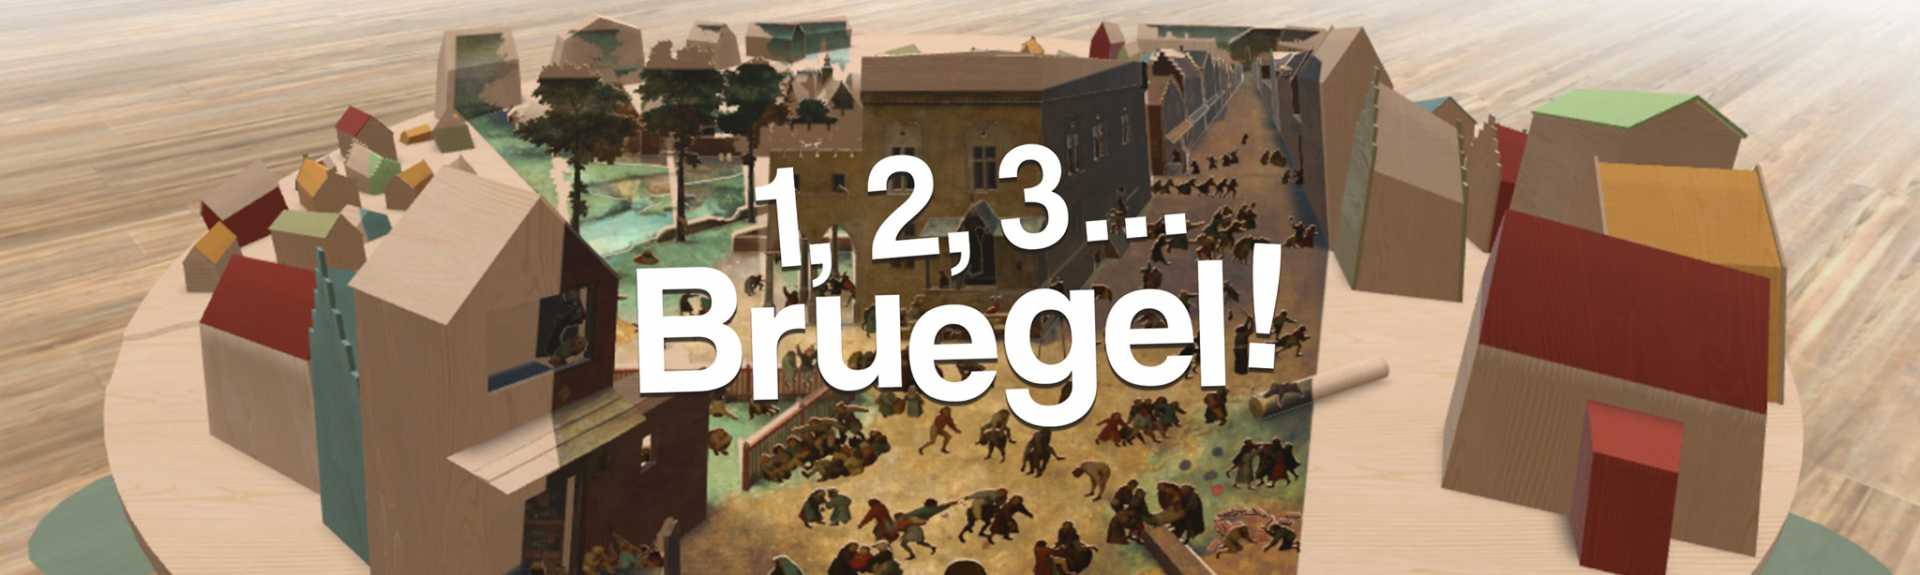 1, 2, 3... Bruegel!